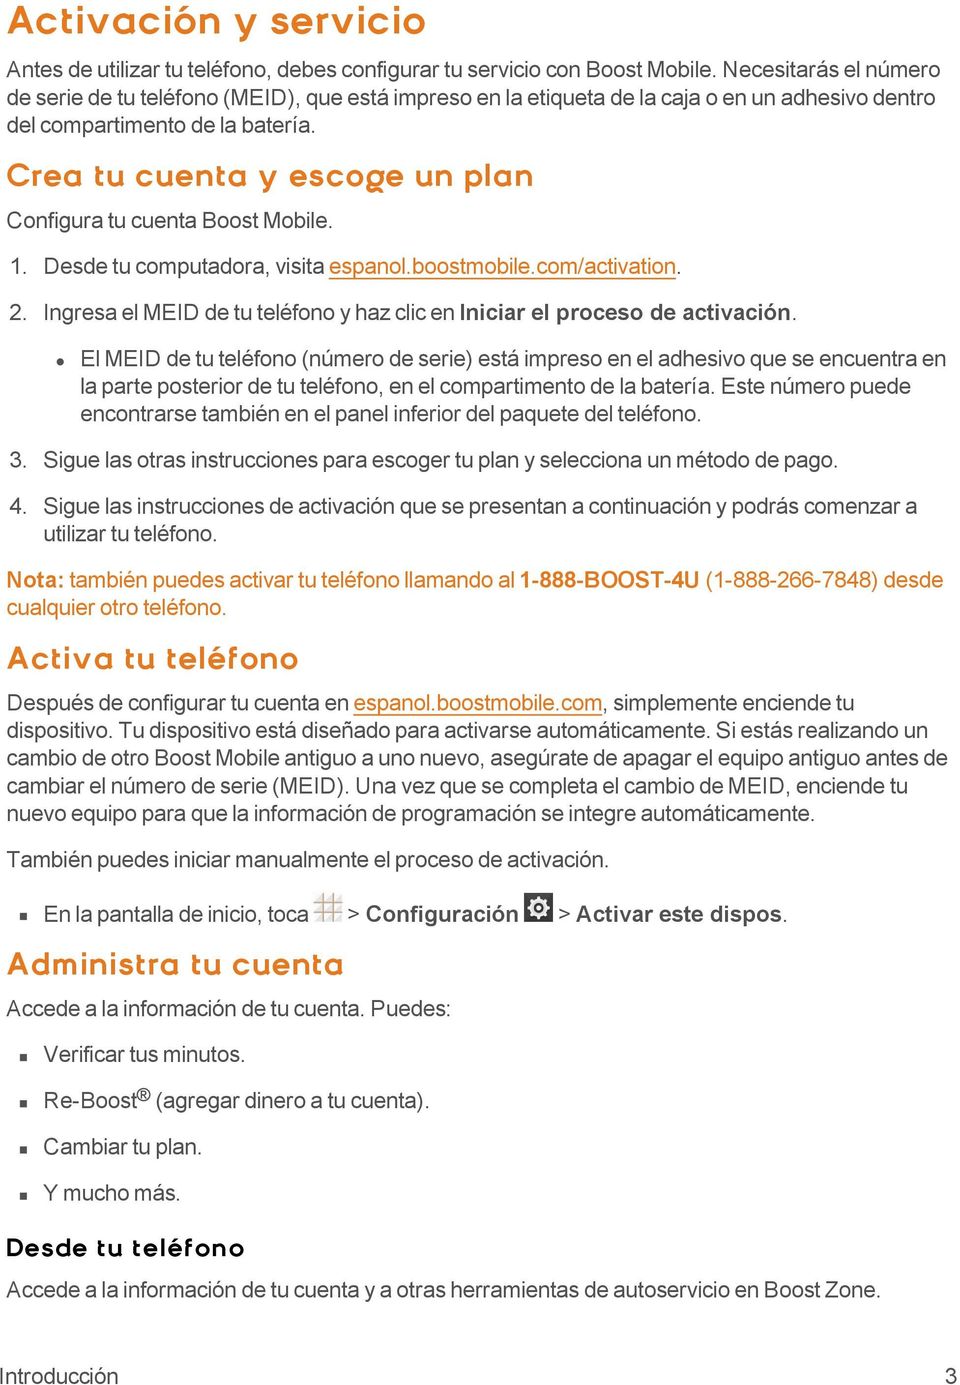 Crea tu cuenta y escoge un plan Configura tu cuenta Boost Mobile. 1. Desde tu computadora, visita espanol.boostmobile.com/activation. 2.